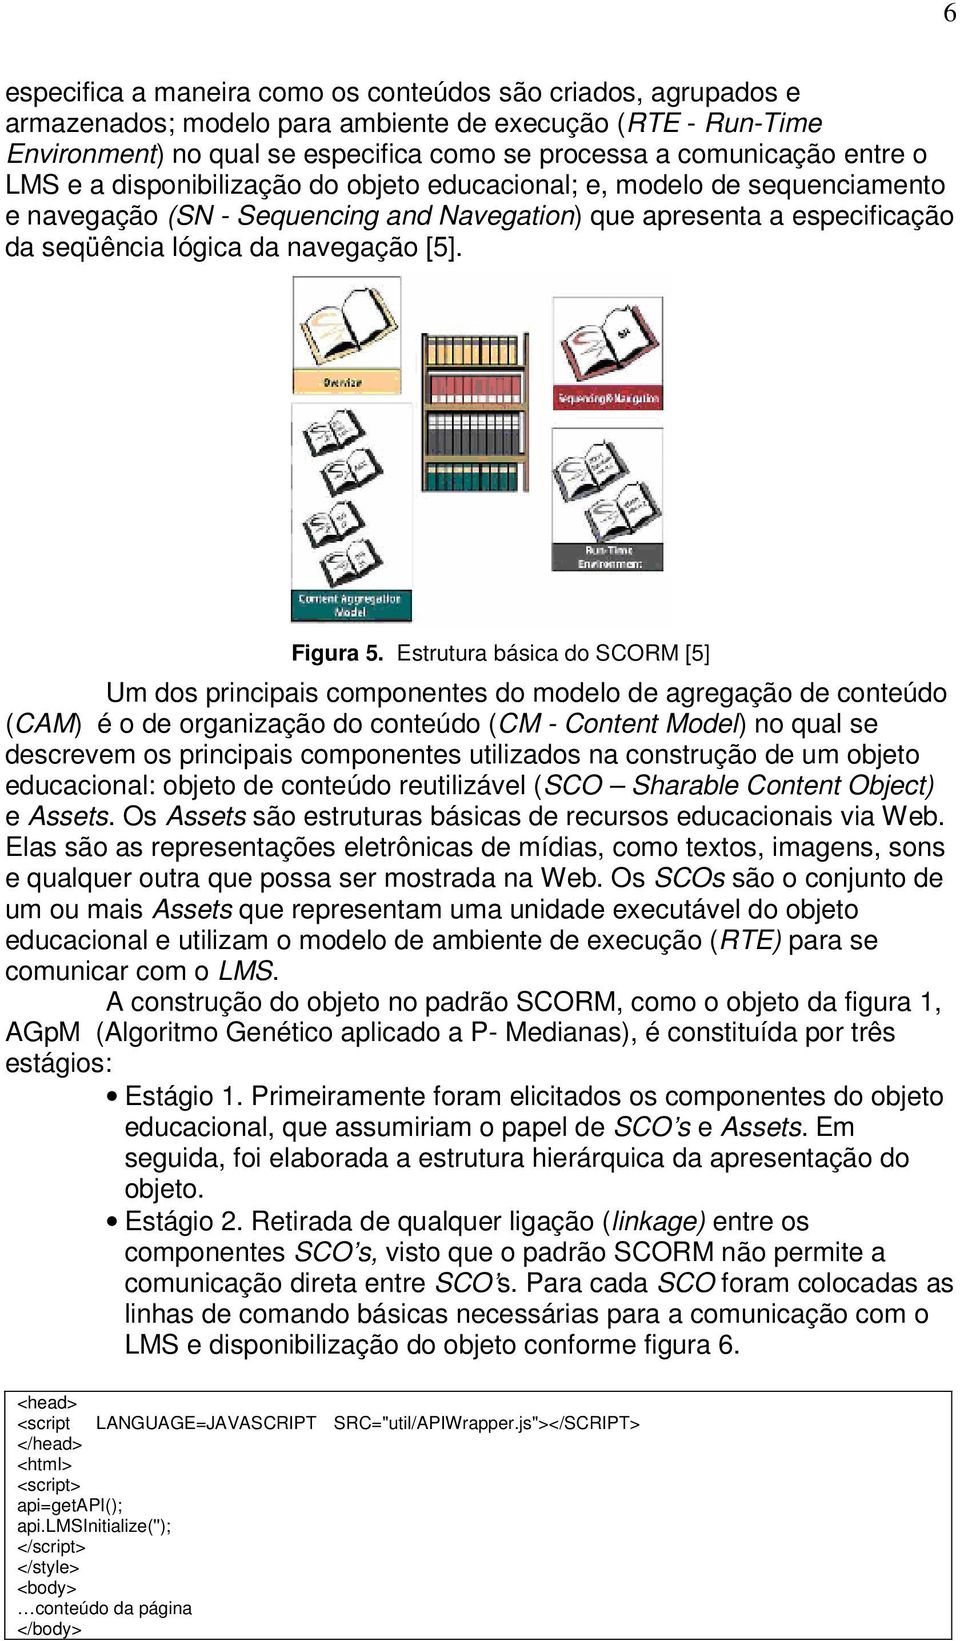 Estrutura básica do SCORM [5] Um dos principais componentes do modelo de agregação de conteúdo (CAM) é o de organização do conteúdo (CM - Content Model) no qual se descrevem os principais componentes